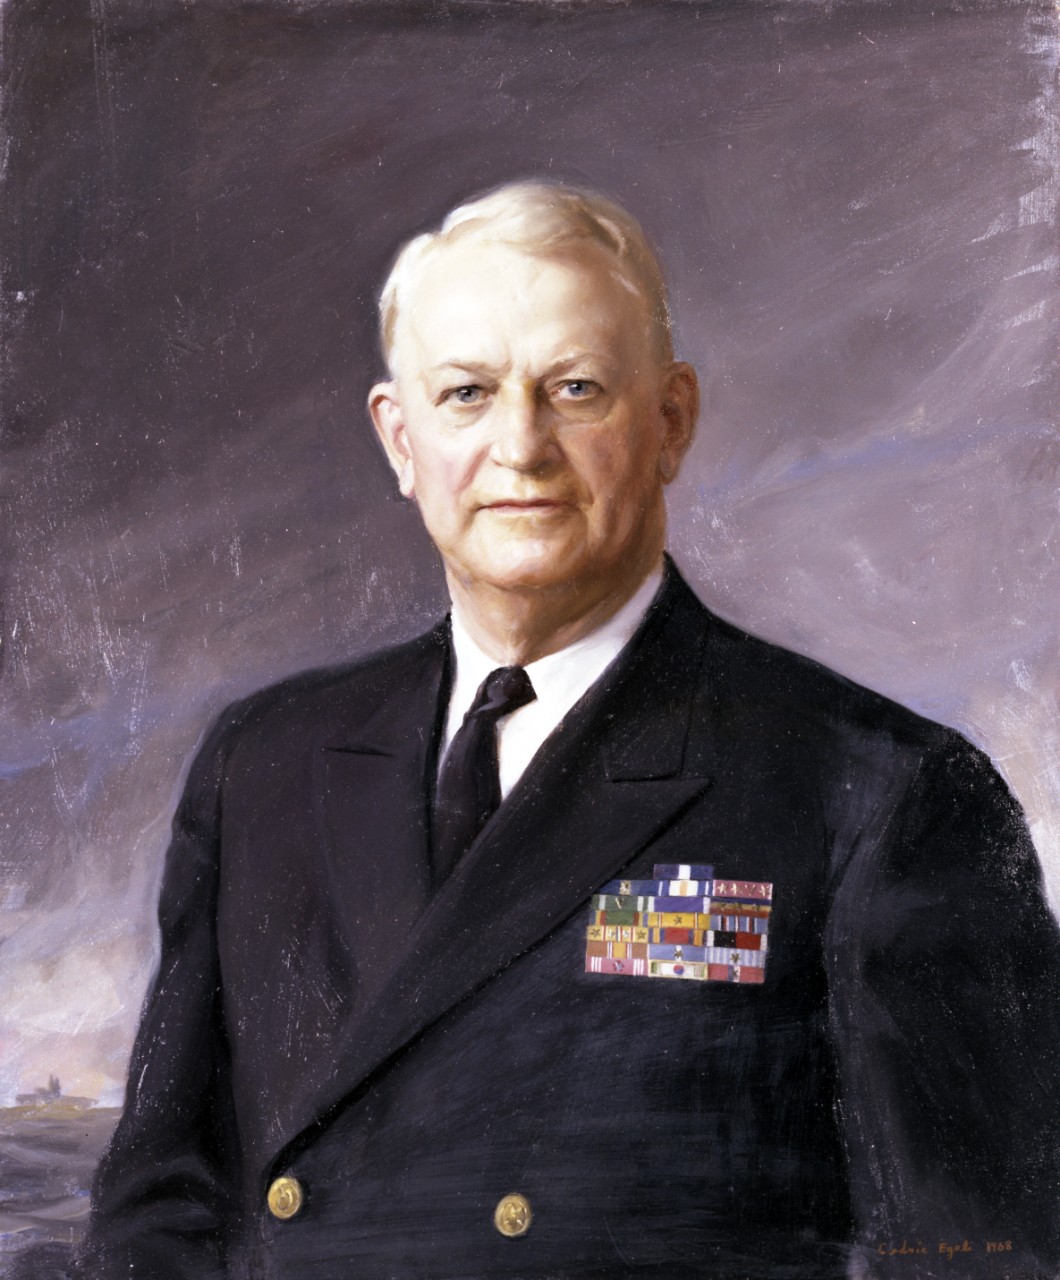 Photo #: NH 95852-KN Admiral Arleigh A. Burke, USN